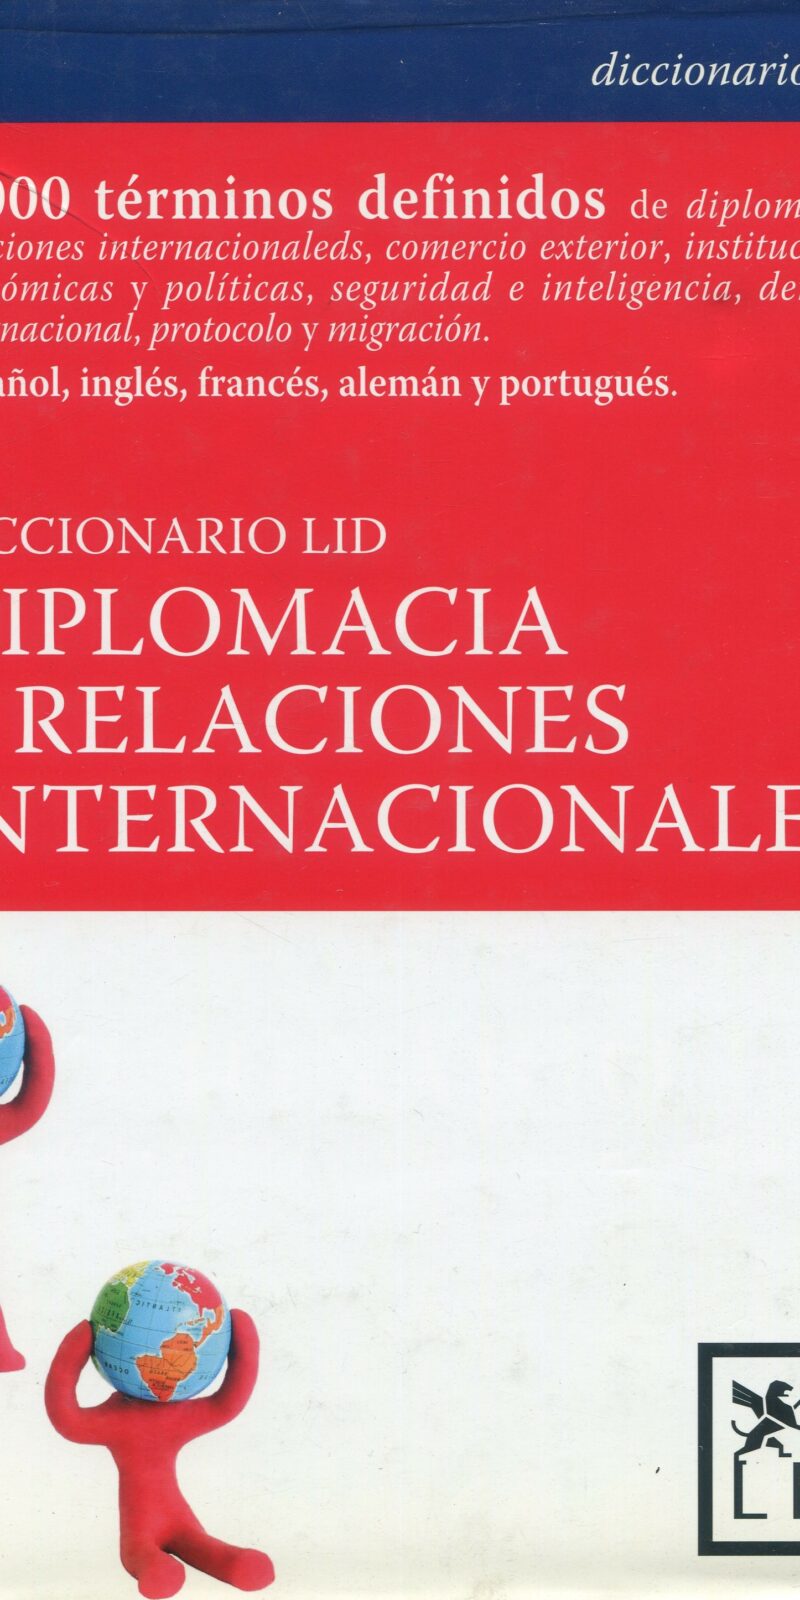 Diccionario Lid Diplomacia y Relaciones Internacionales 9788488717665